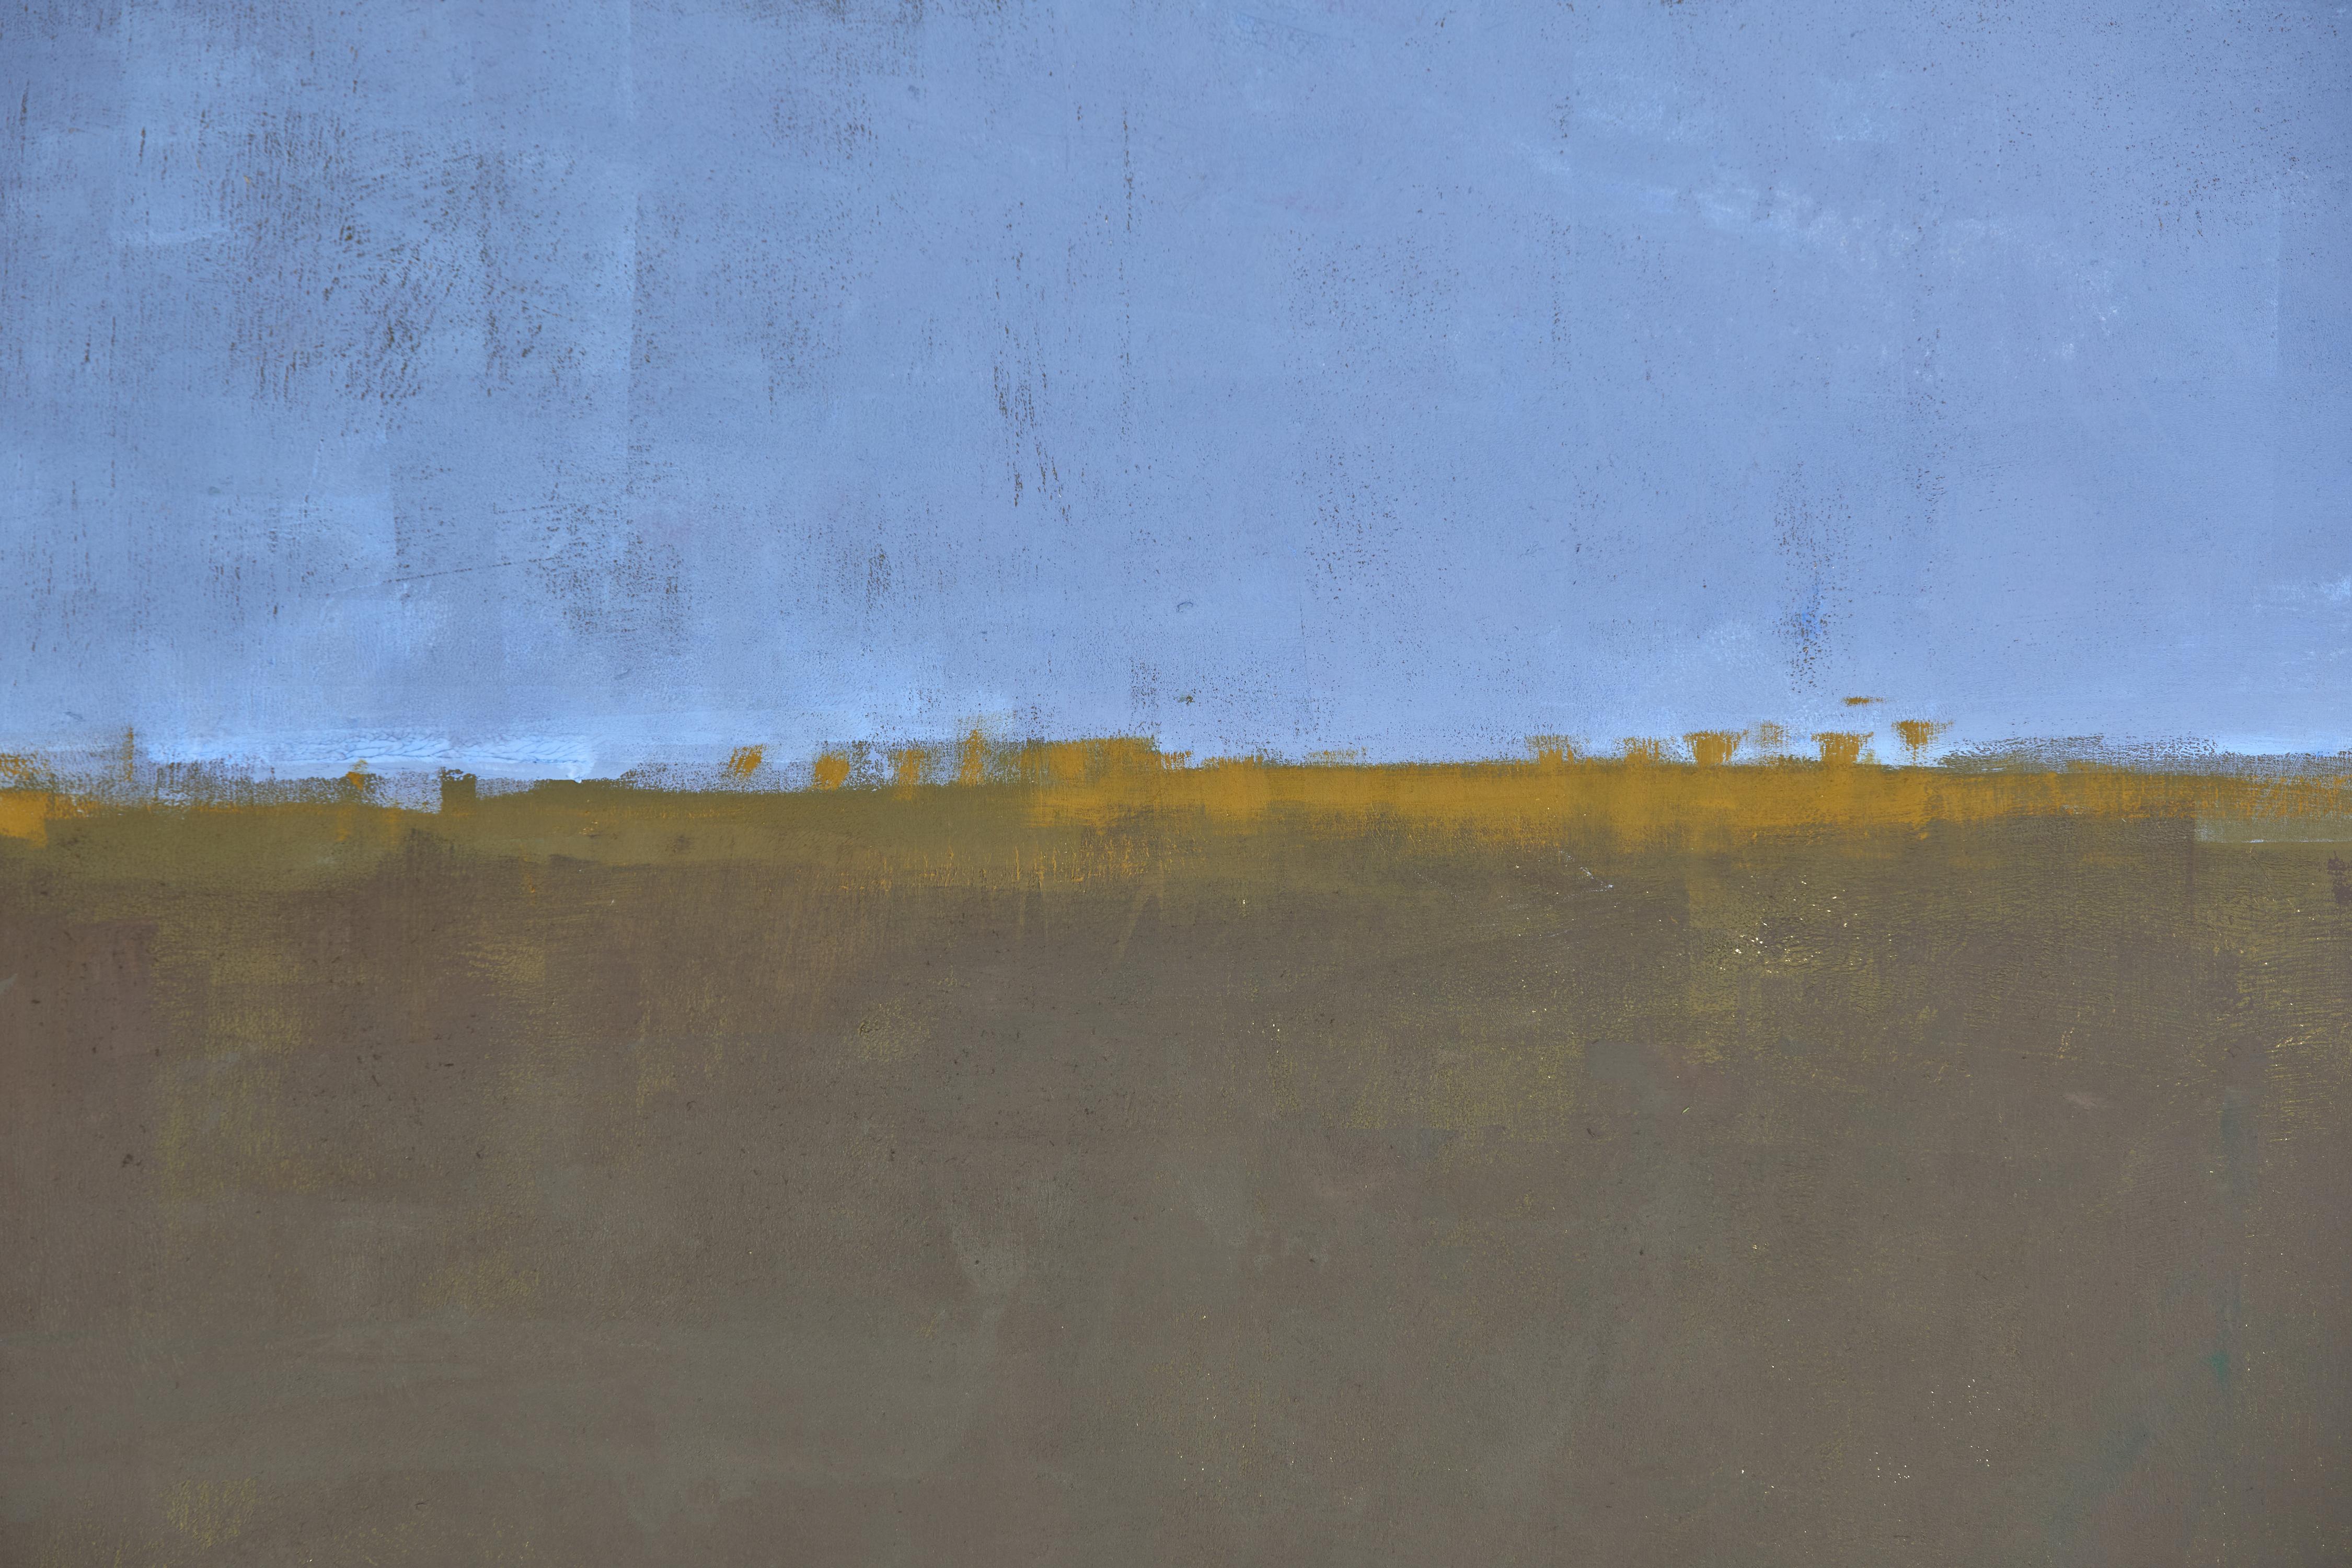 Mary Jo O’Gara Painting, Titled Field 2